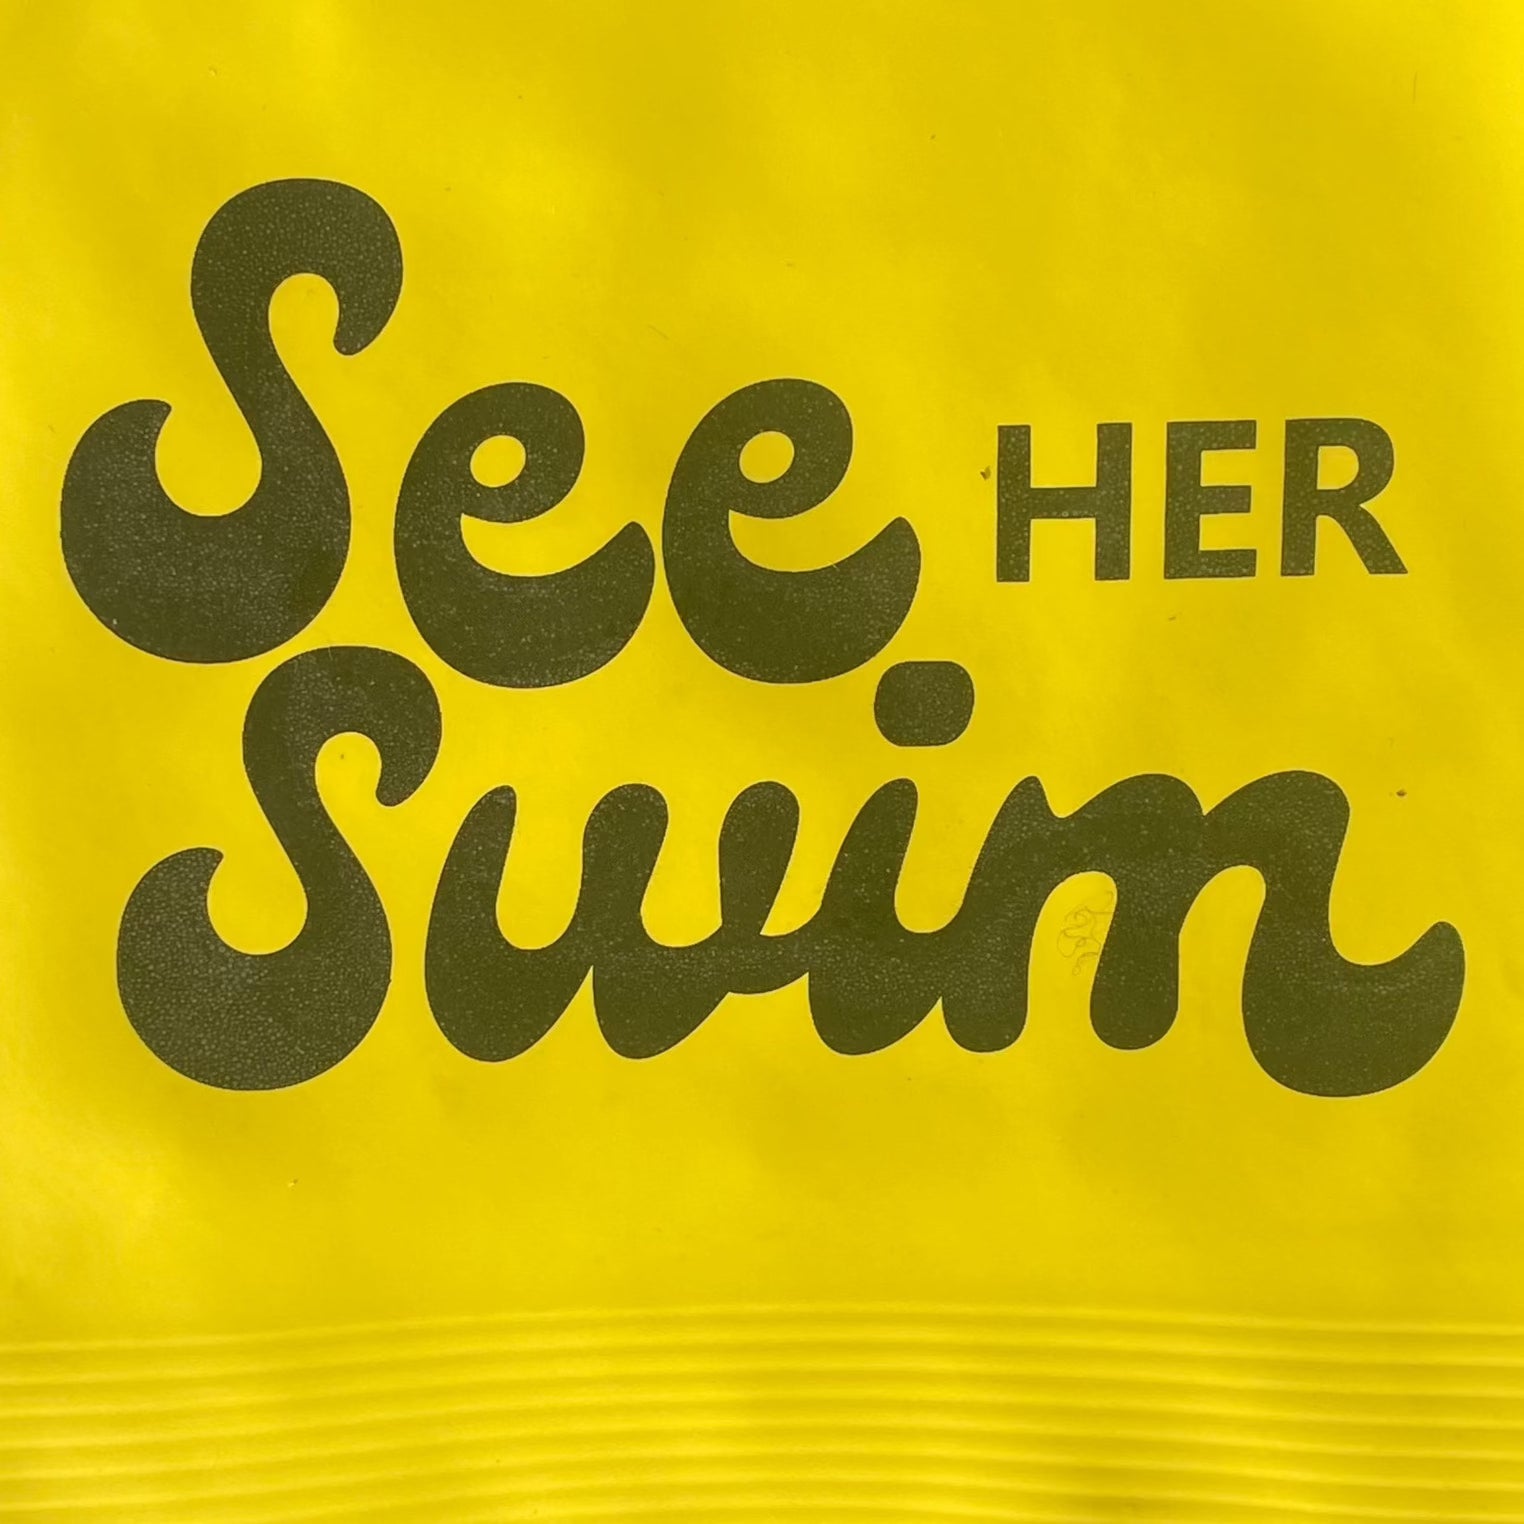 Yellow Latex See Her Swim Cap